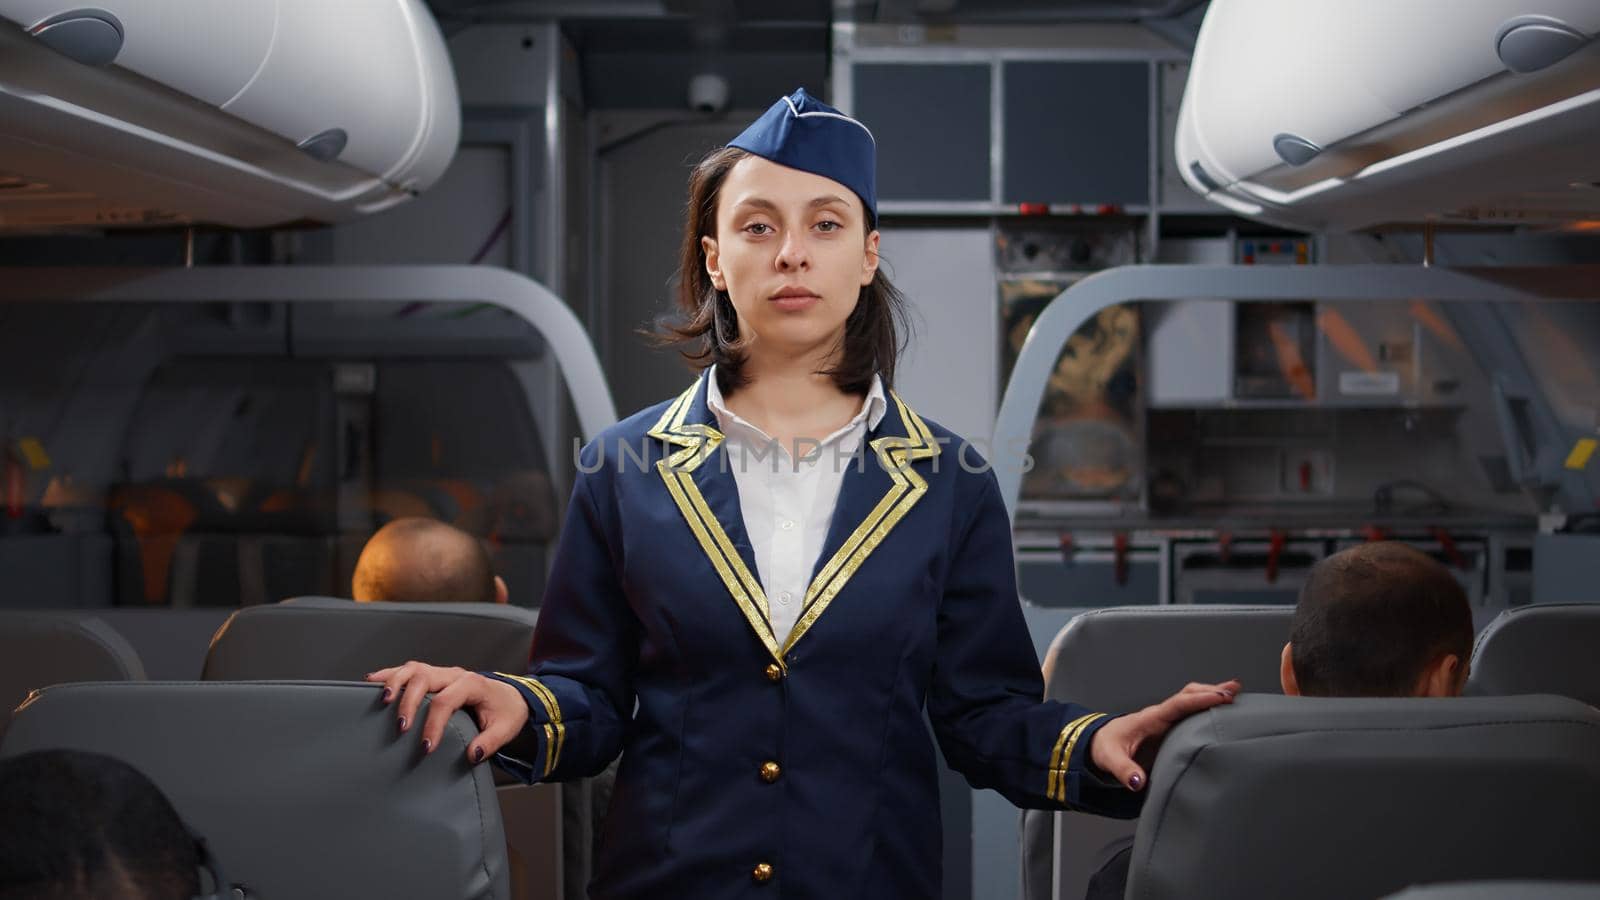 Portrait of woman stewardess in aviation uniform boarding people by DCStudio